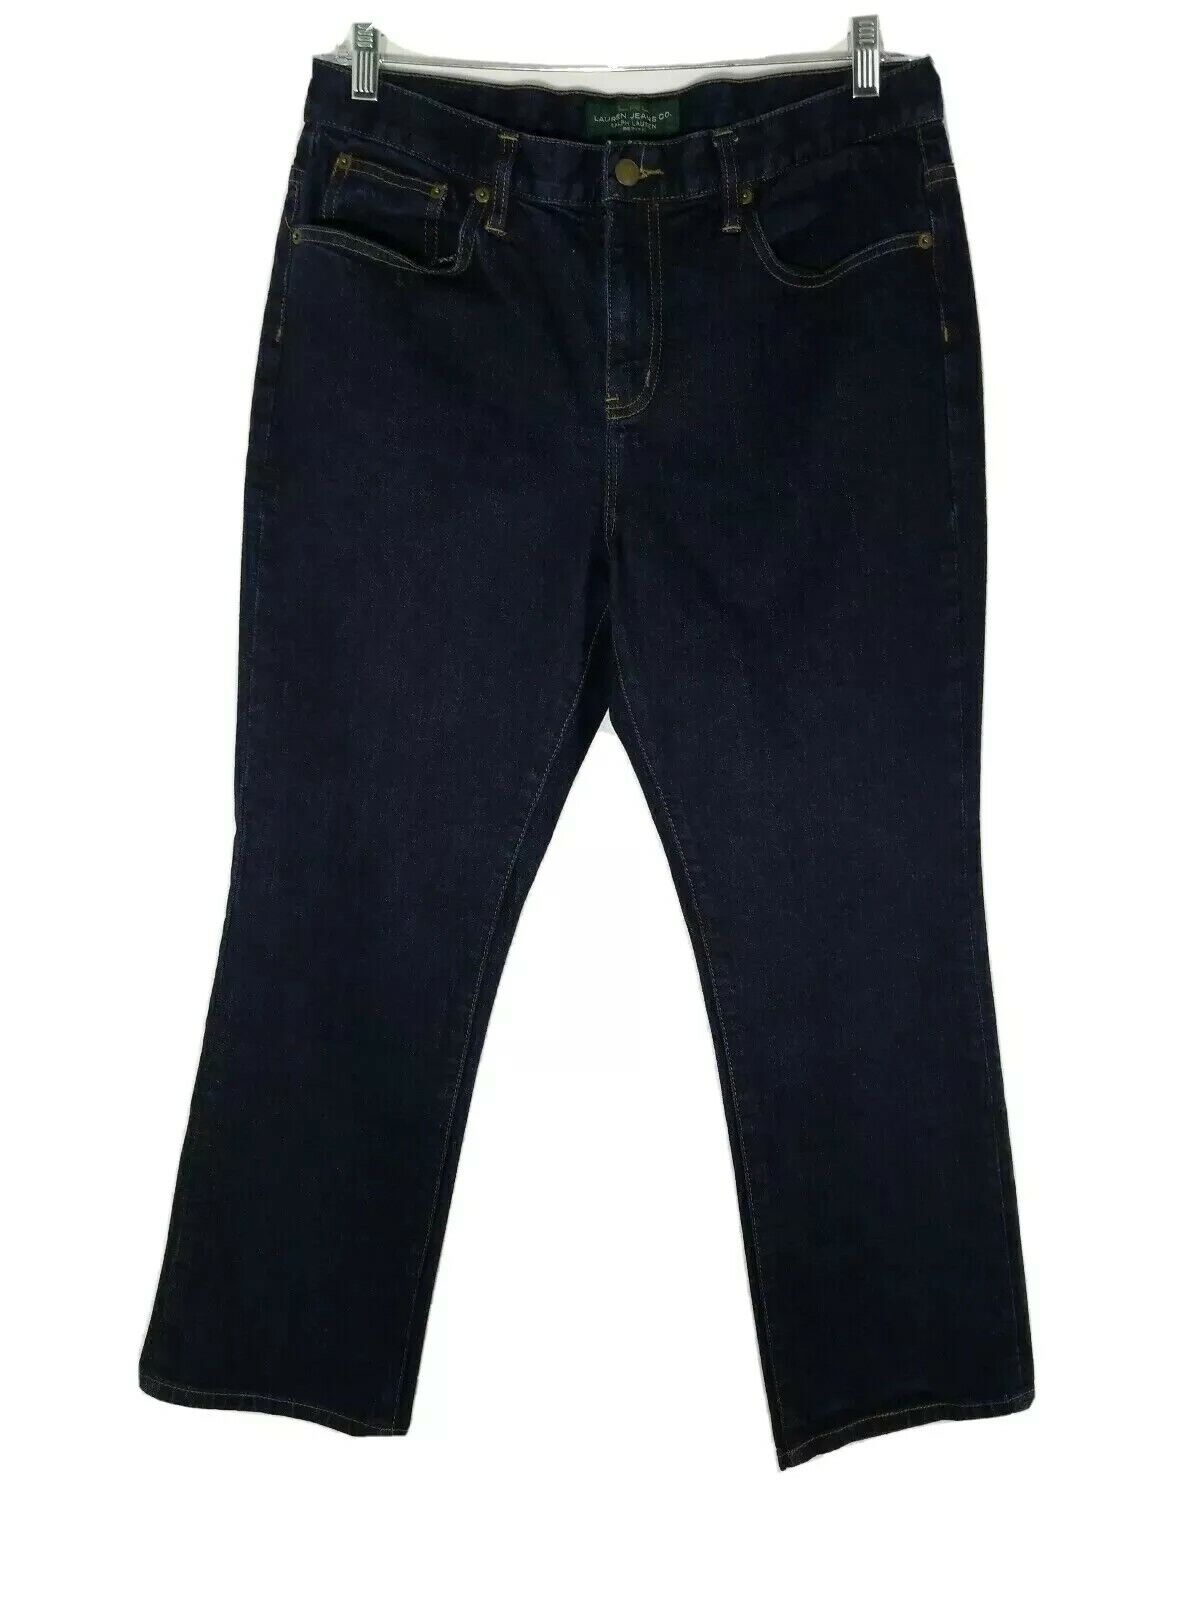 Lauren Ralph Lauren jeans Dark blue Size 12 Petite - image 2